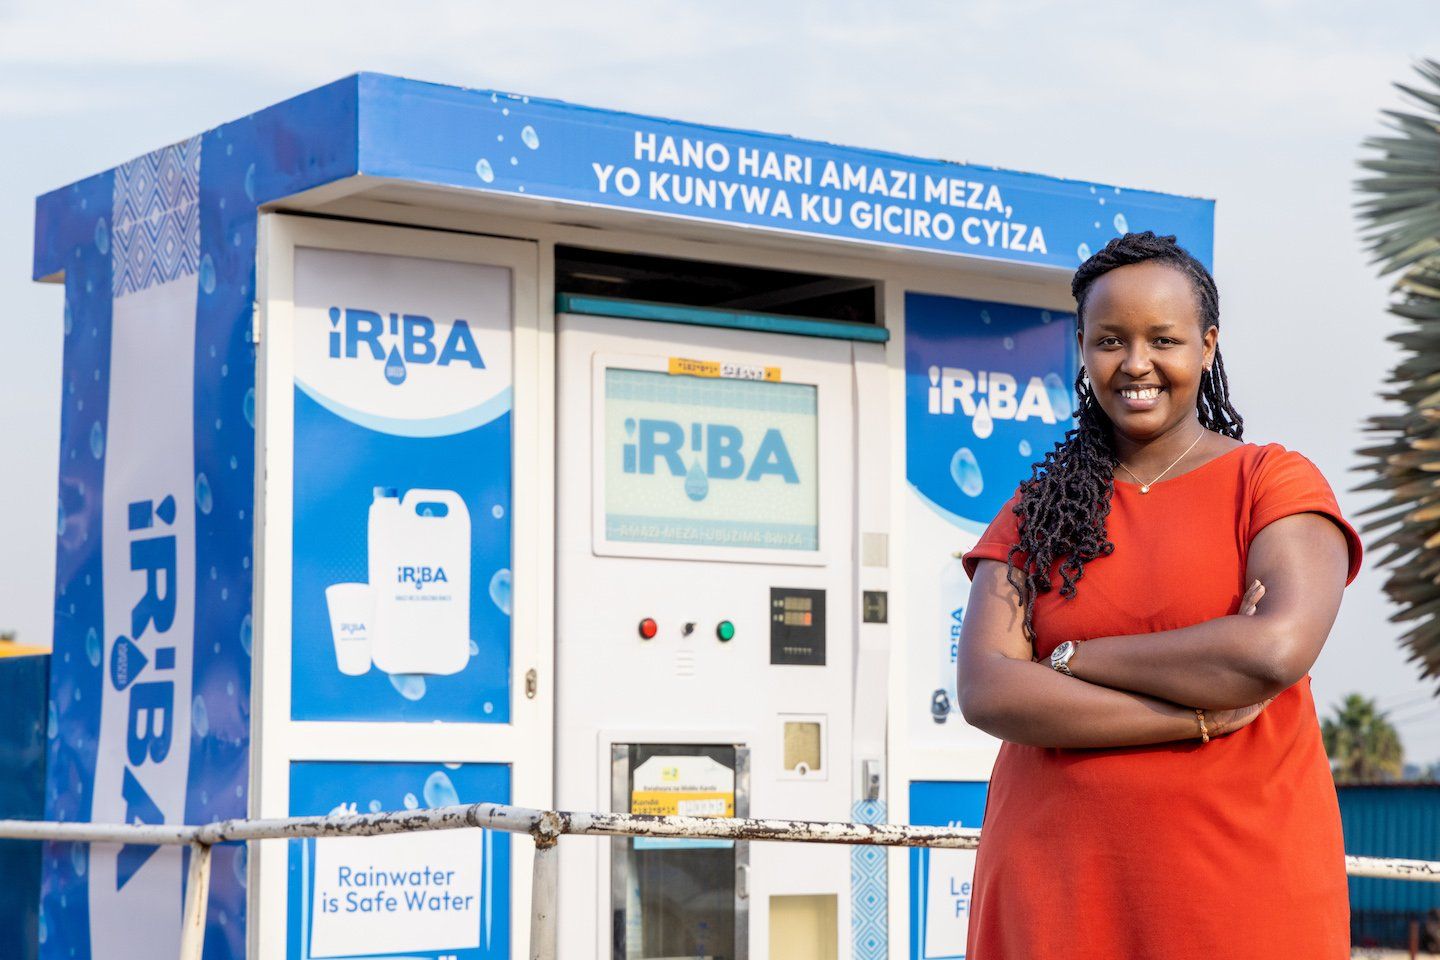 Yvette Ishimwe from Rwanda, founder of Iriba Water Group